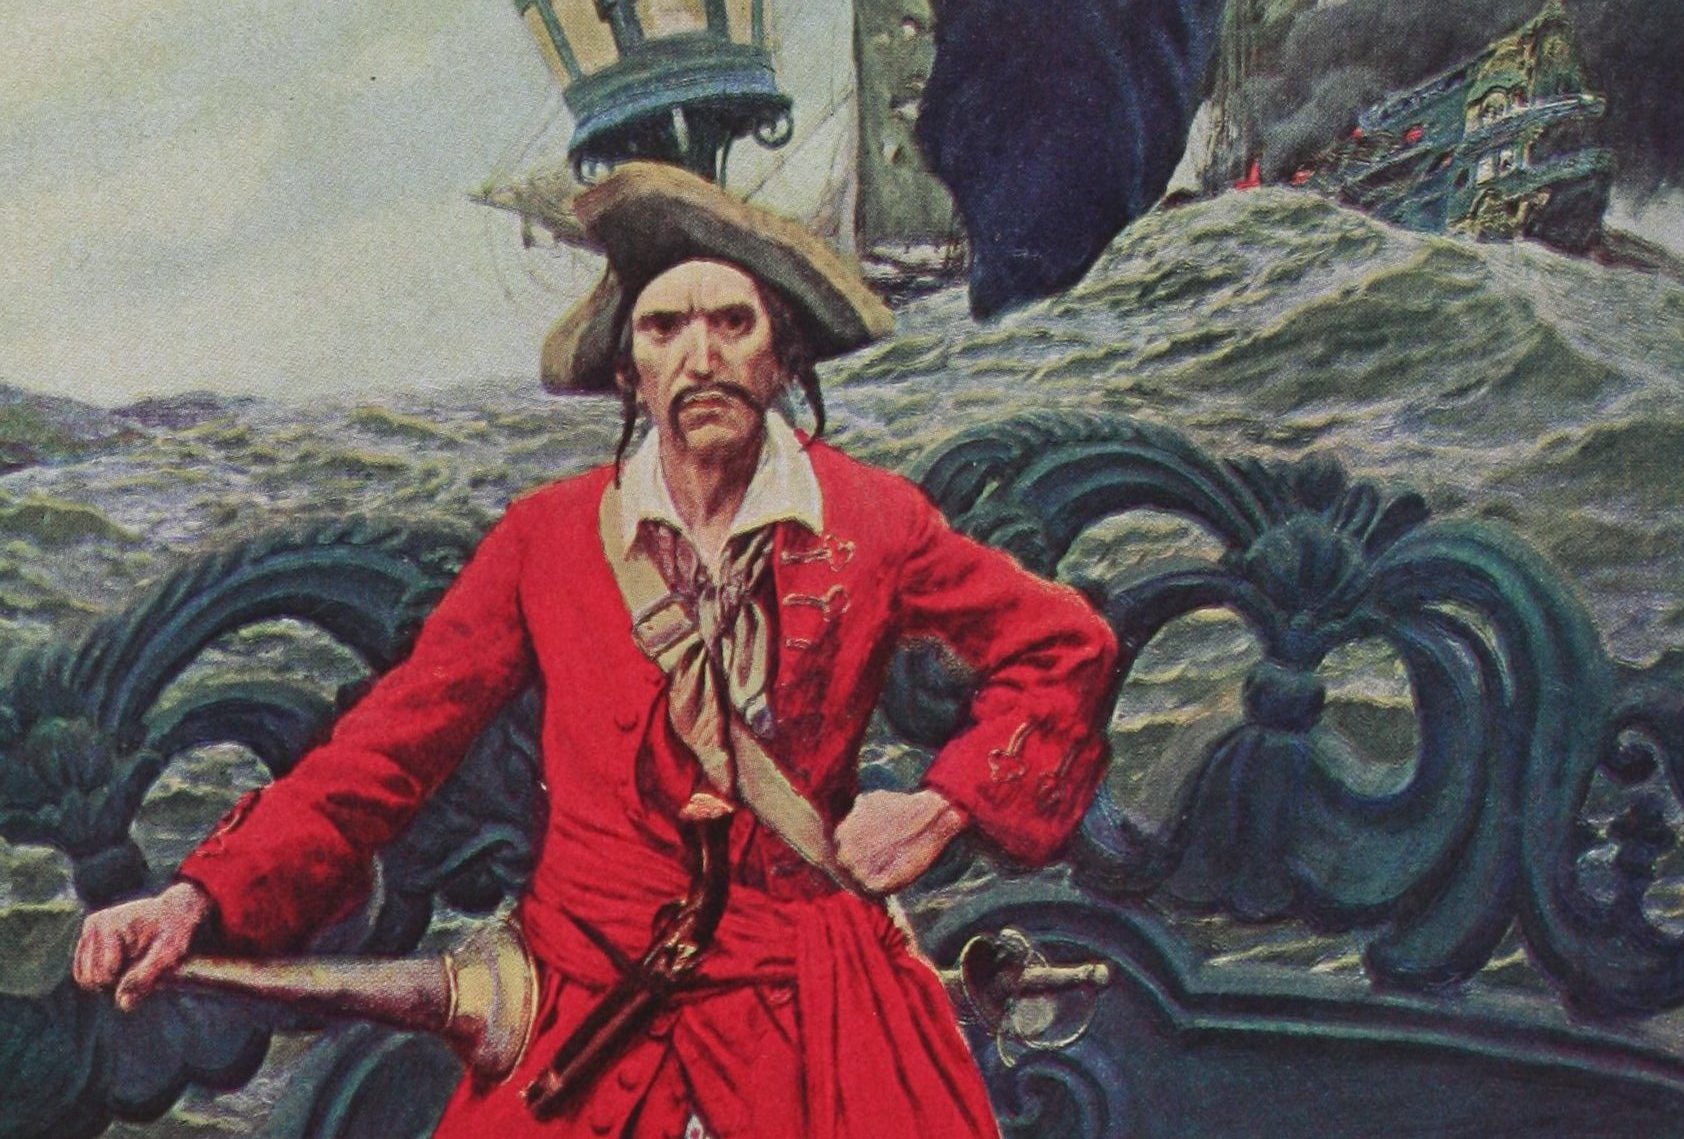 Самые знаменитые реальные пираты (и пиратки!) | Наука ...
